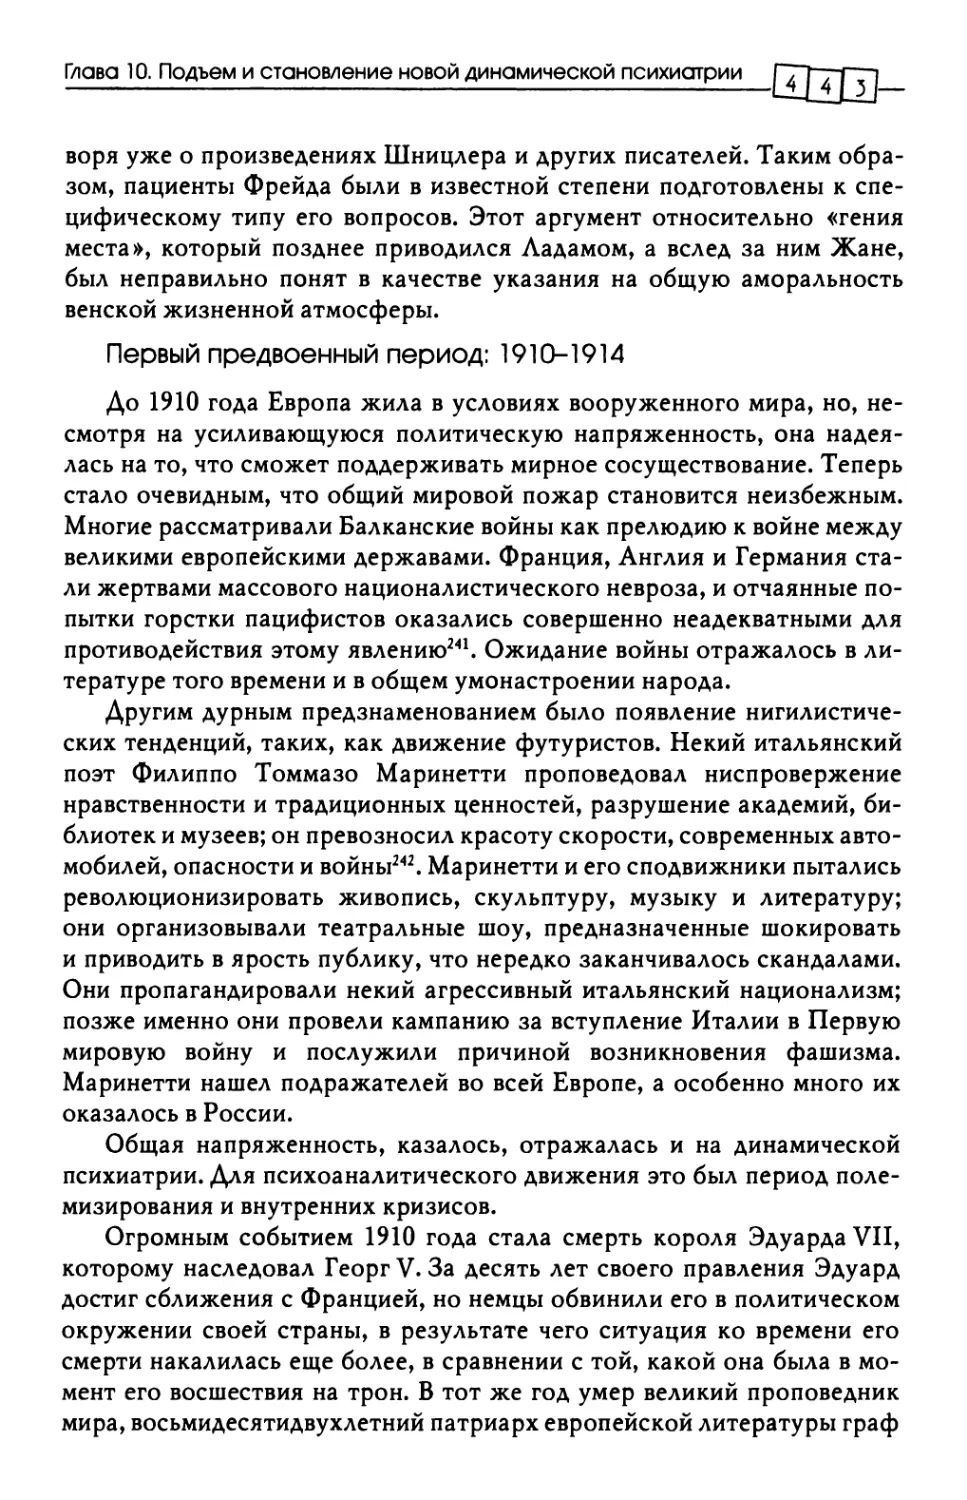 Первый предвоенный период: 1910-1914